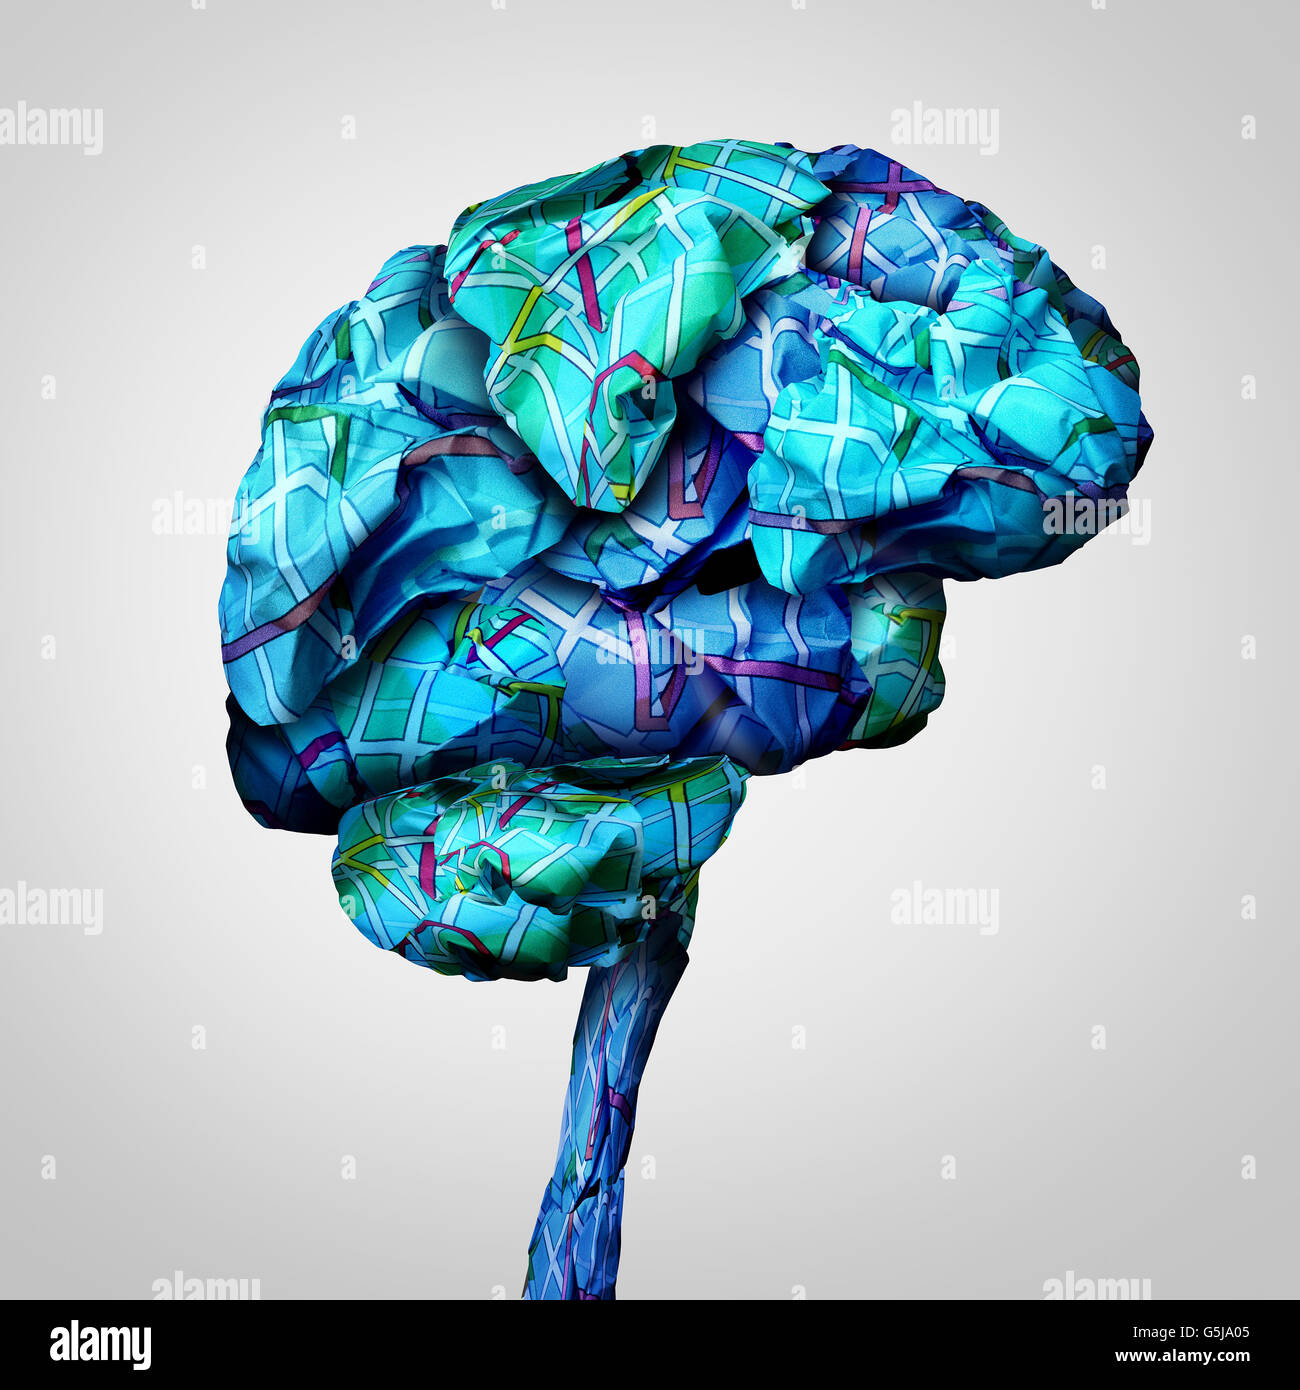 La mappatura del cervello salute mentale concetto e psicologia sfida simbolo o icona di brainstorming come un gruppo di carta sgualcita mappe stradali conformata come una mente umana in un 3D illustrazione dello stile. Foto Stock